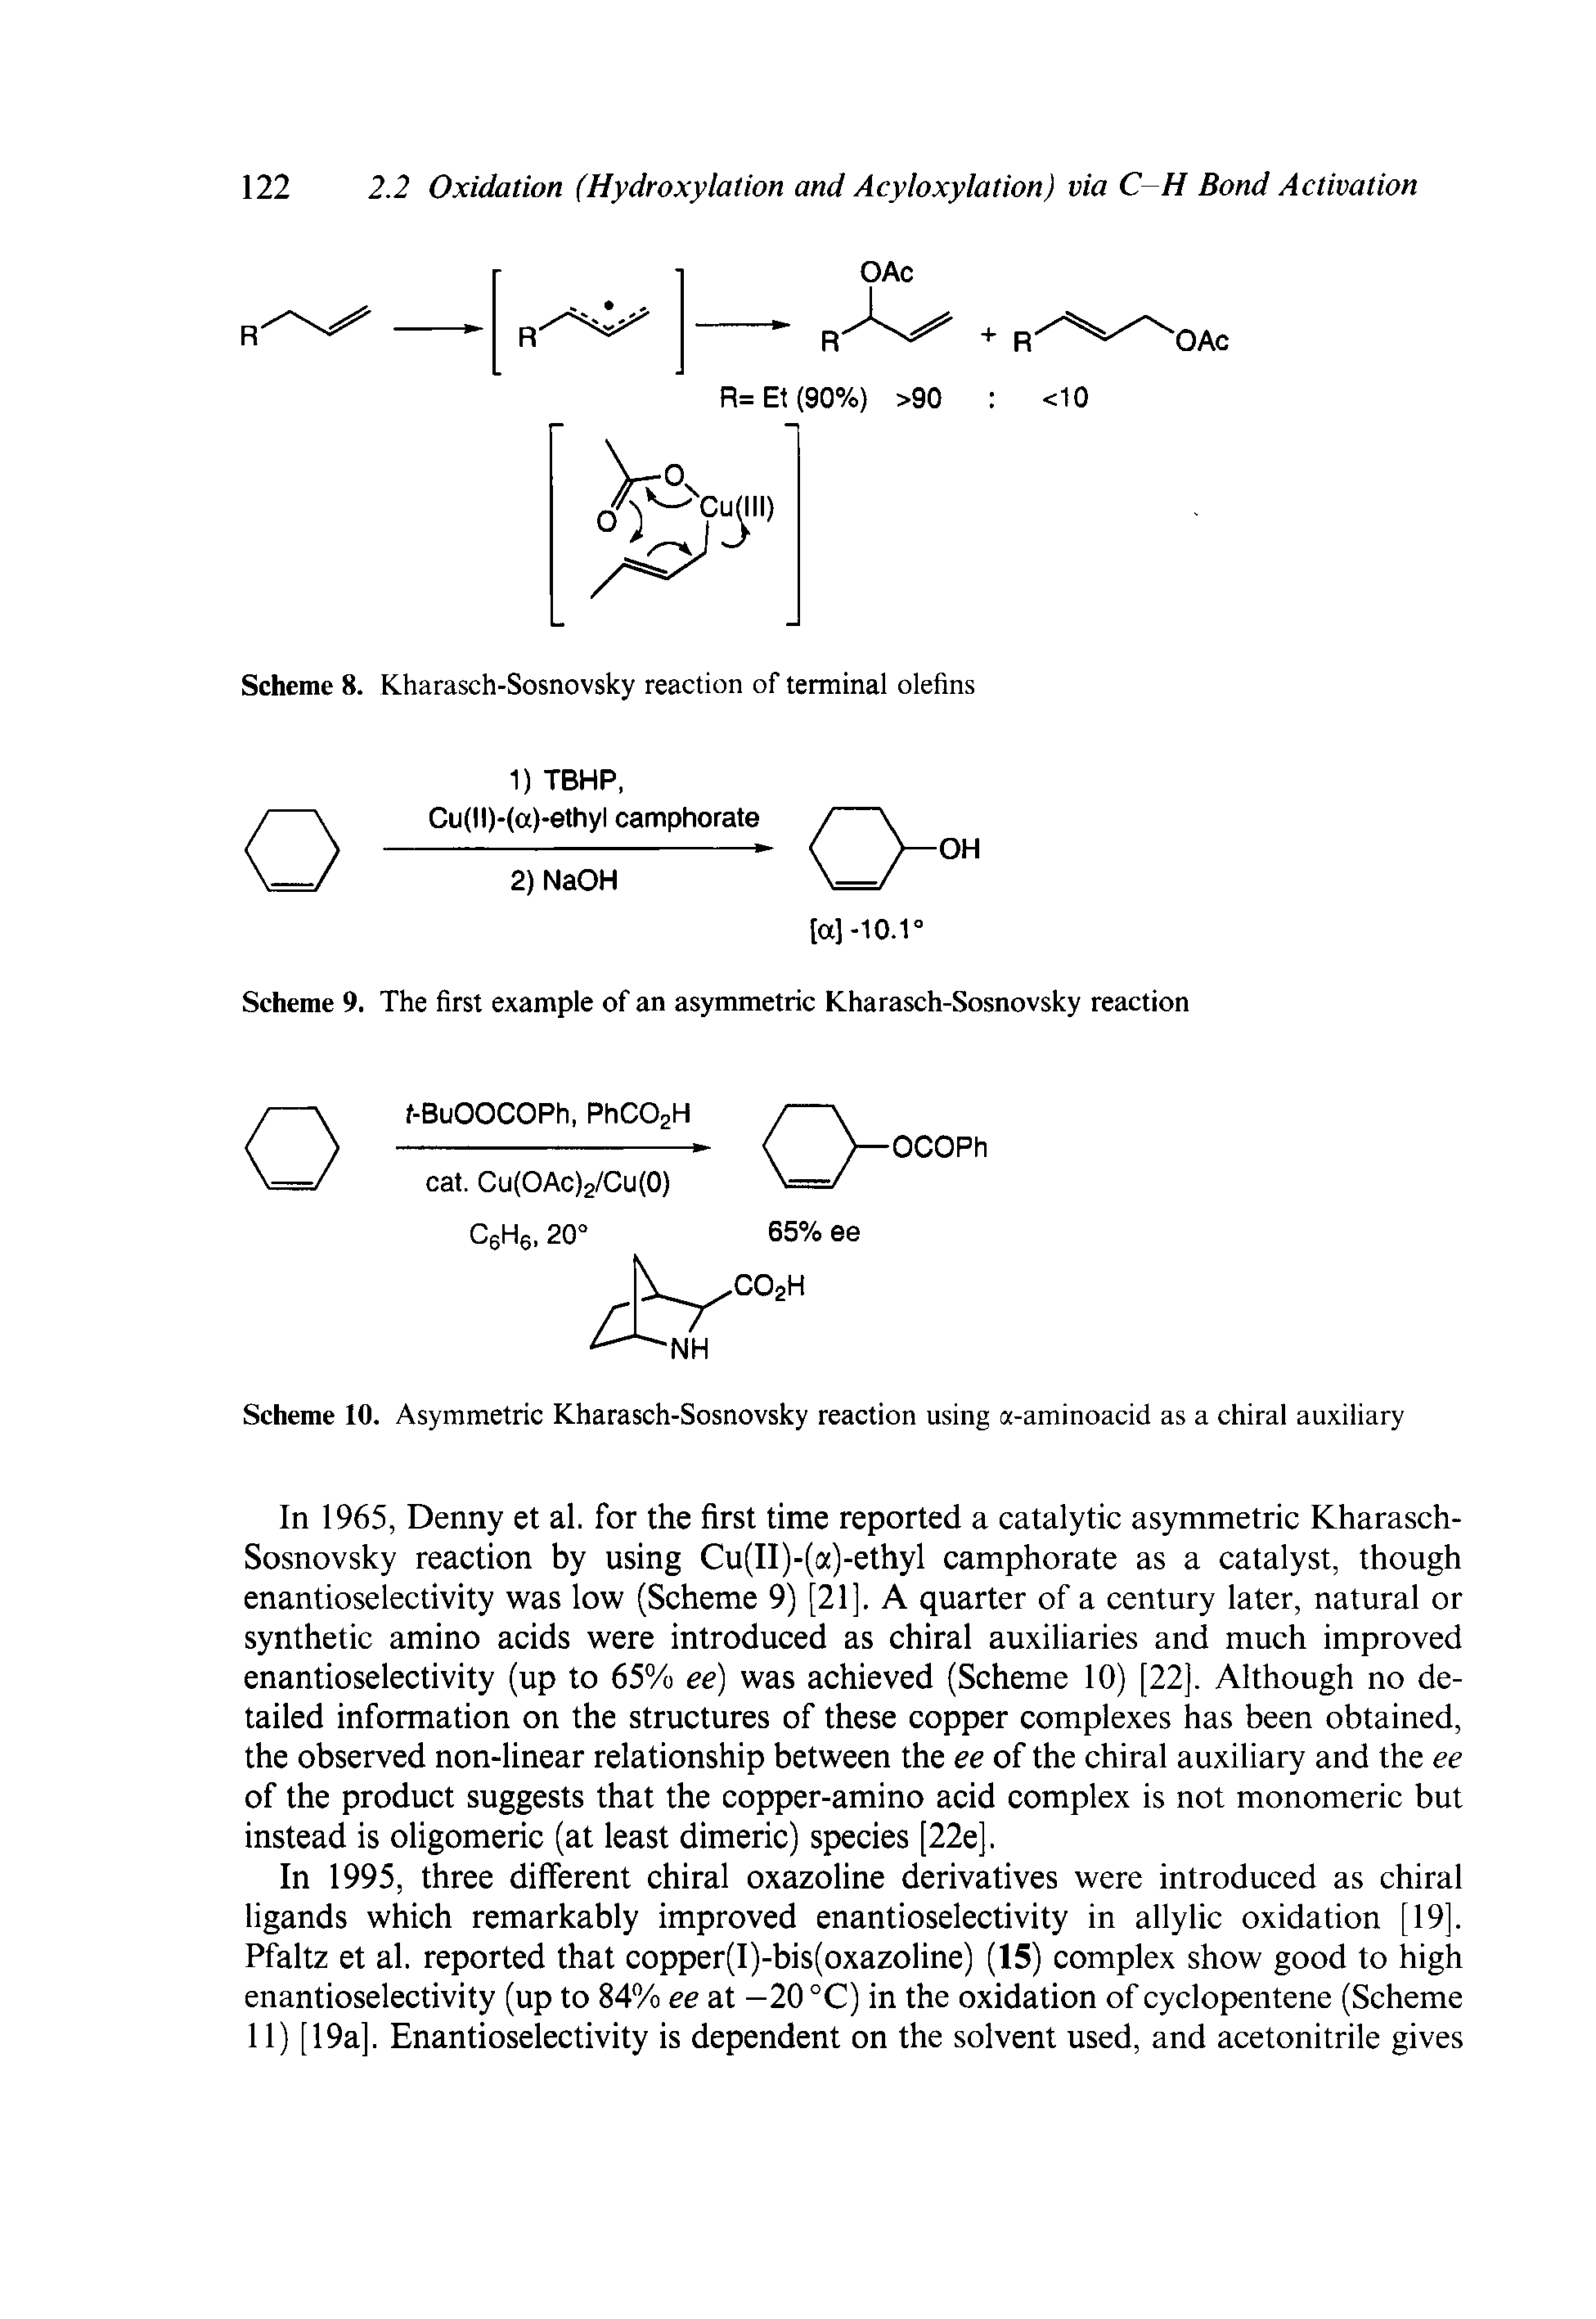 Scheme 8. Kharasch-Sosnovsky reaction of terminal olefins...